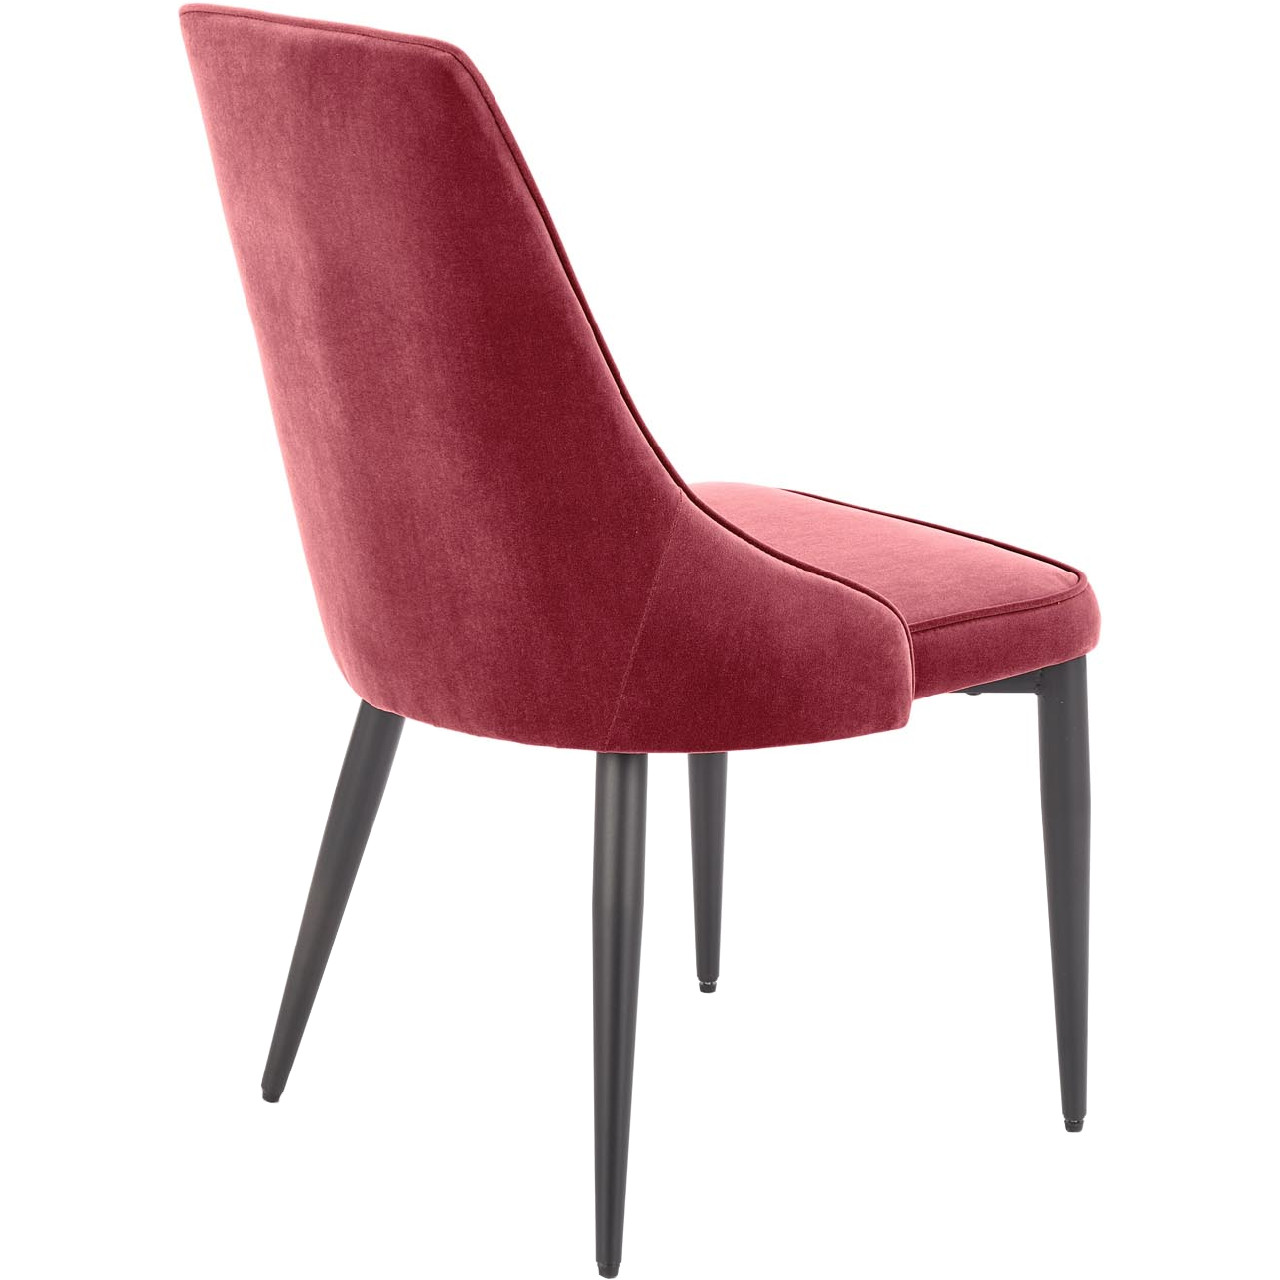 Chair K365 dark red